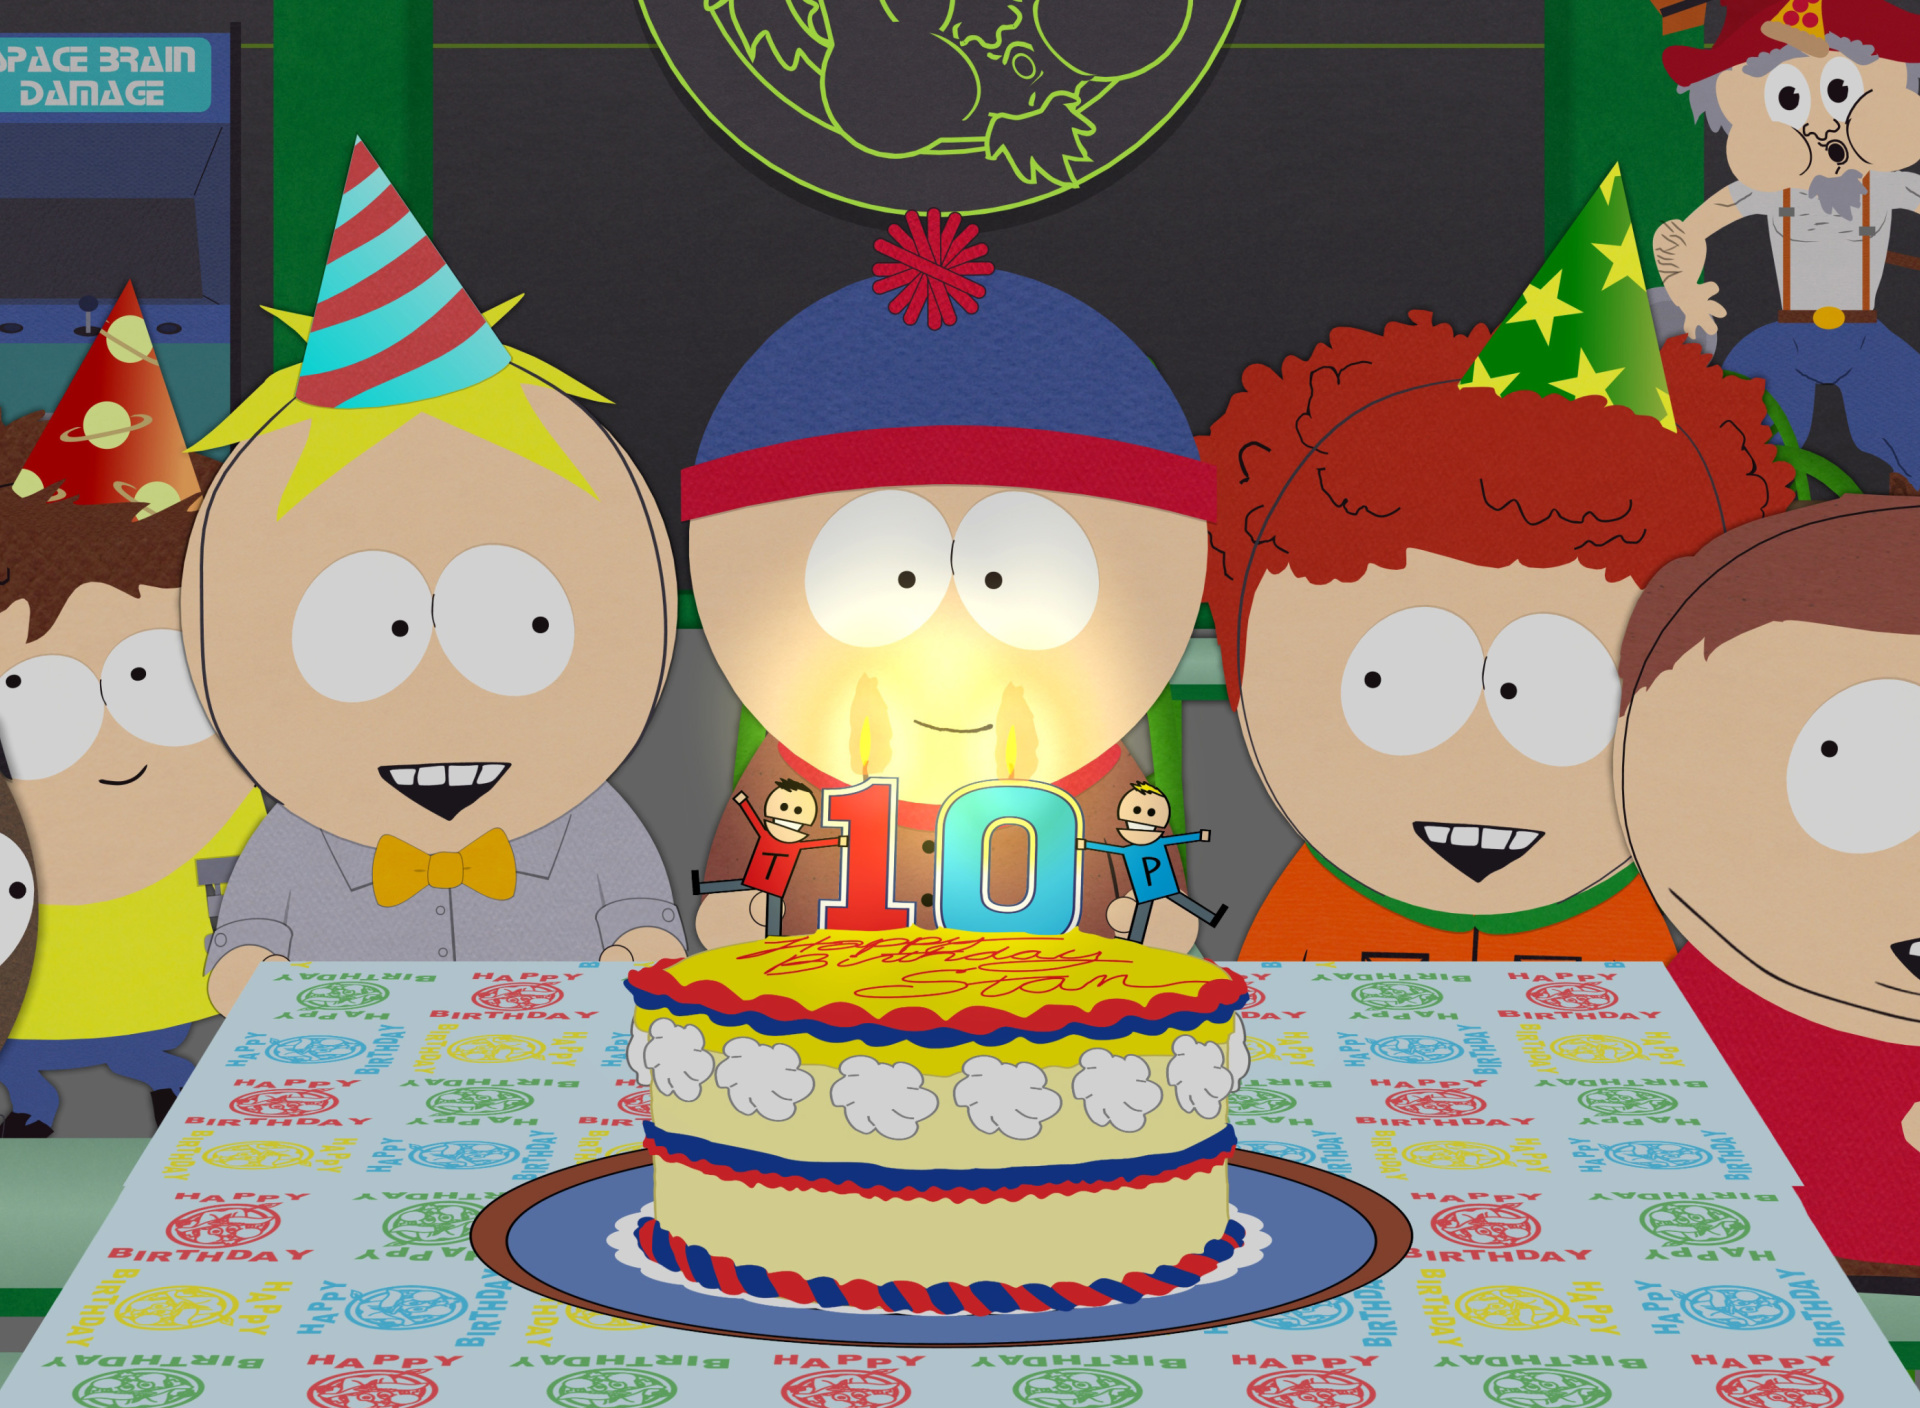 South Park Season 15 Stans Party wallpaper 1920x1408